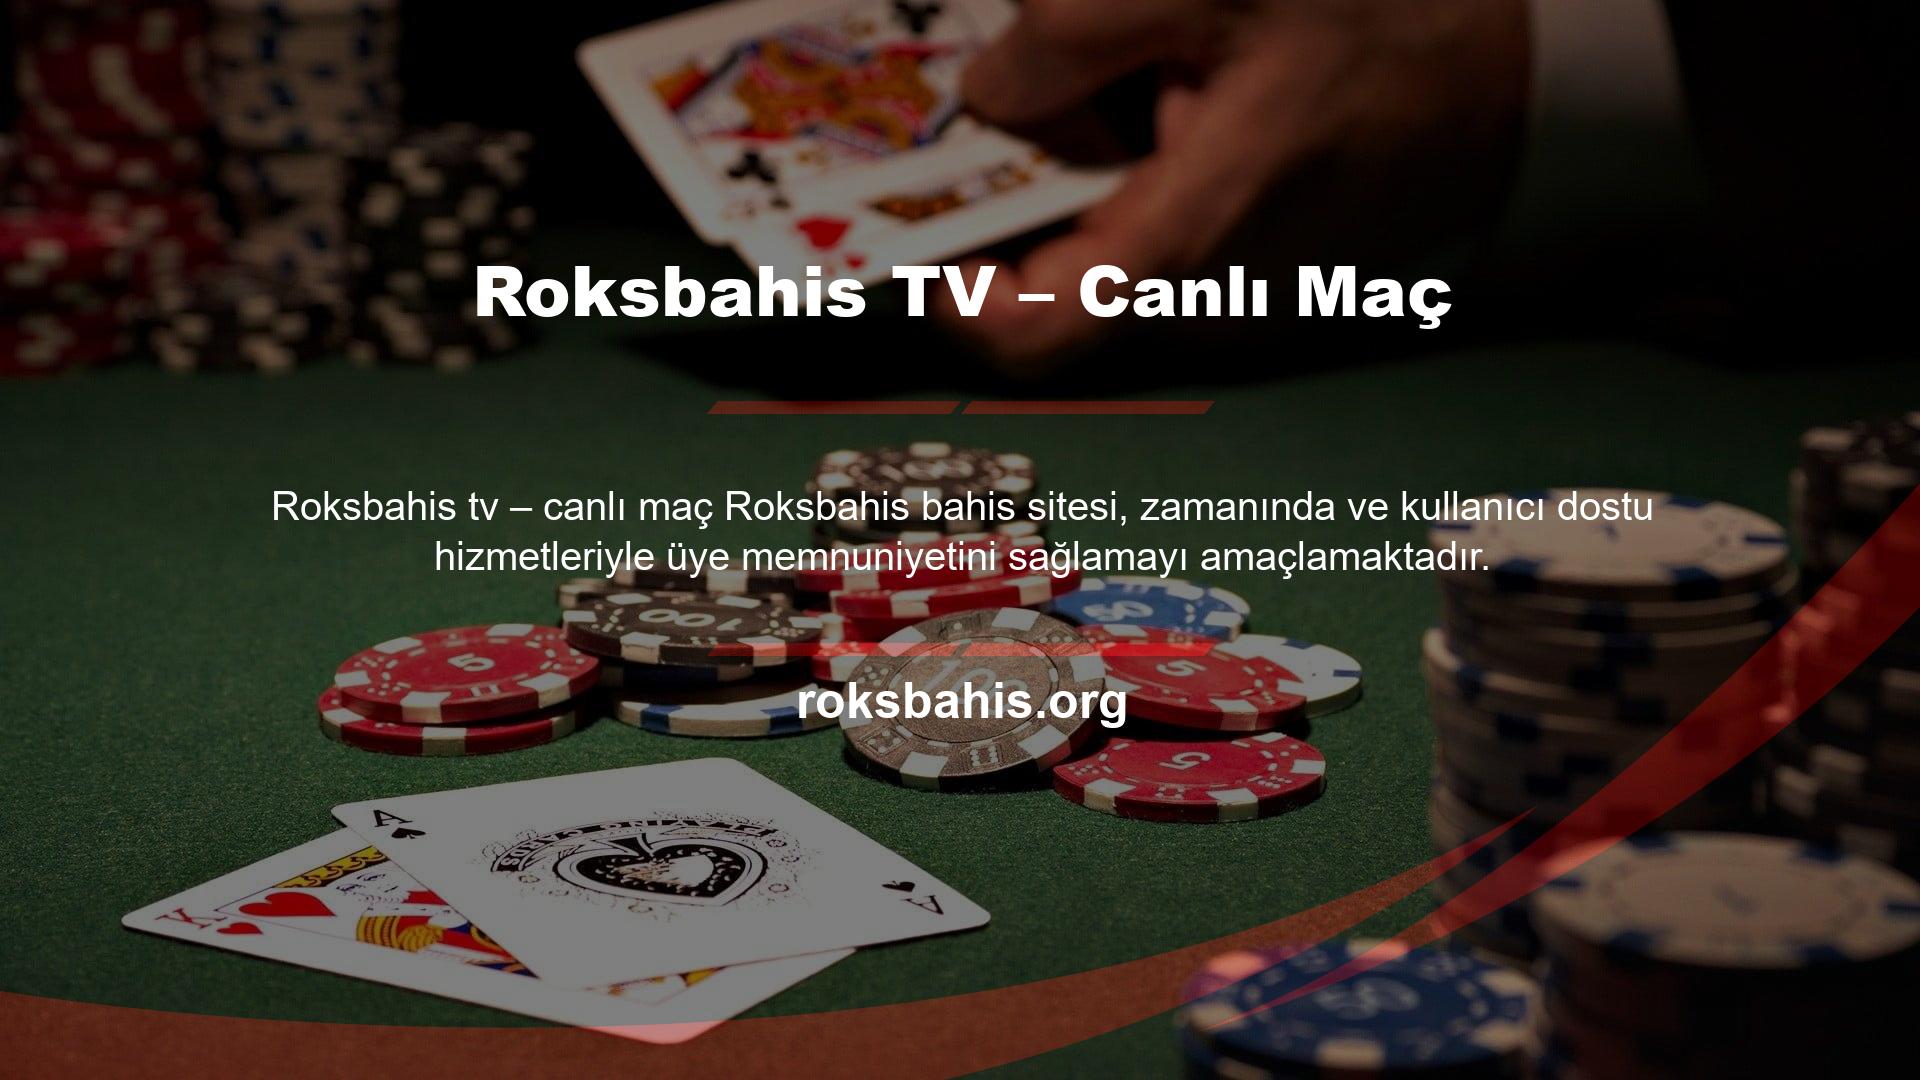 Çeşitli hizmetler sunan Roksbahis yeni hizmetlerinden biri de "Roksbahis TV" olarak duyuruldu